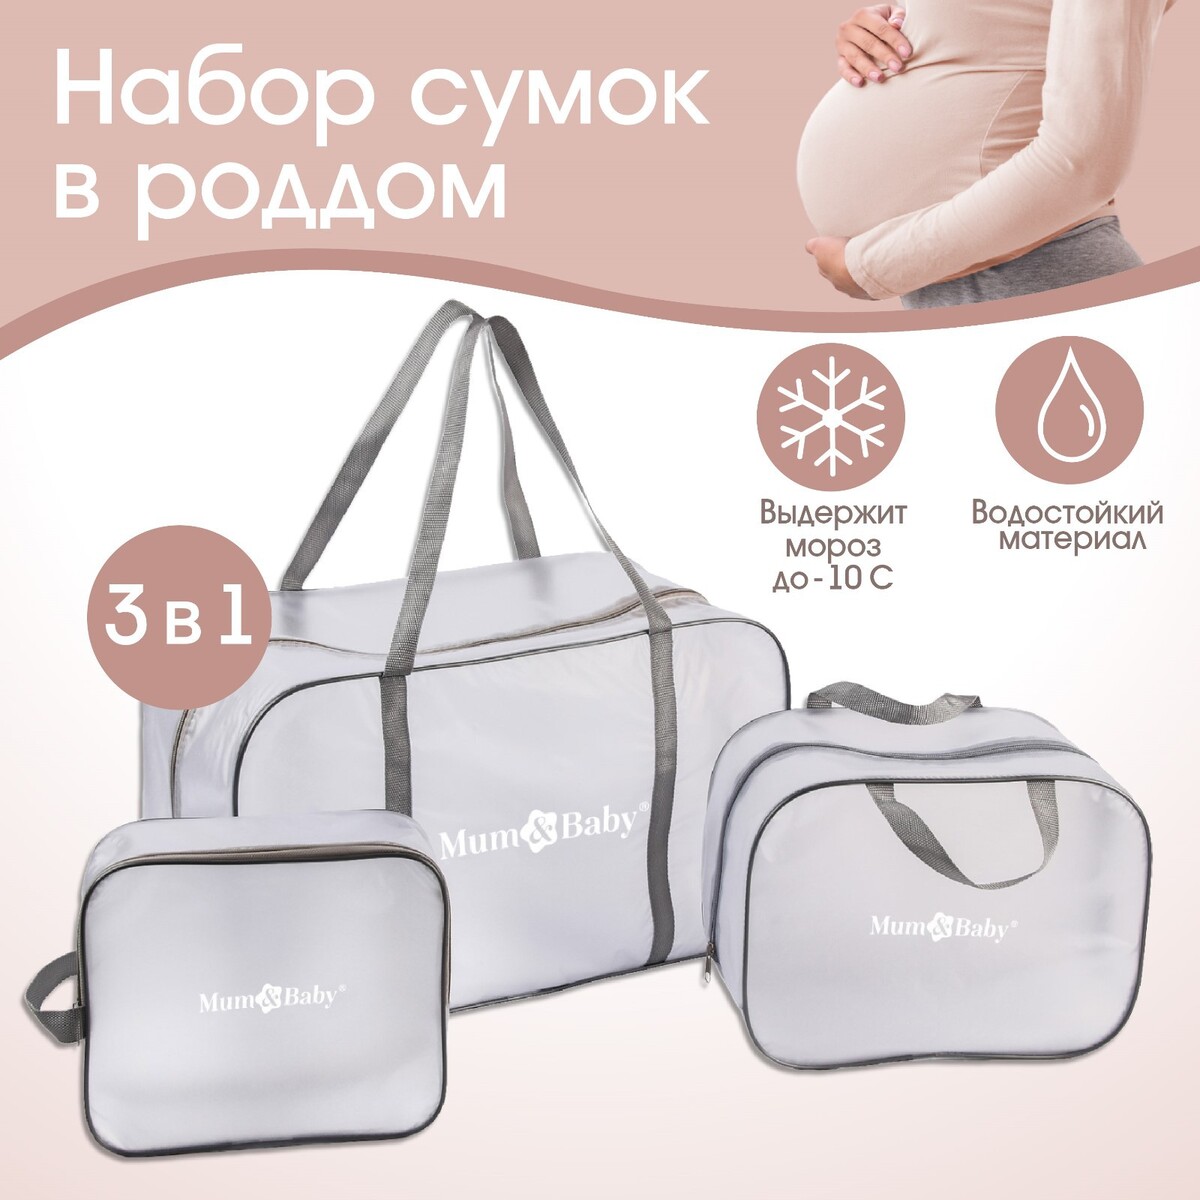 Набор сумок для роддома, комплект 3 в 1 №1, пвх Mum&Baby